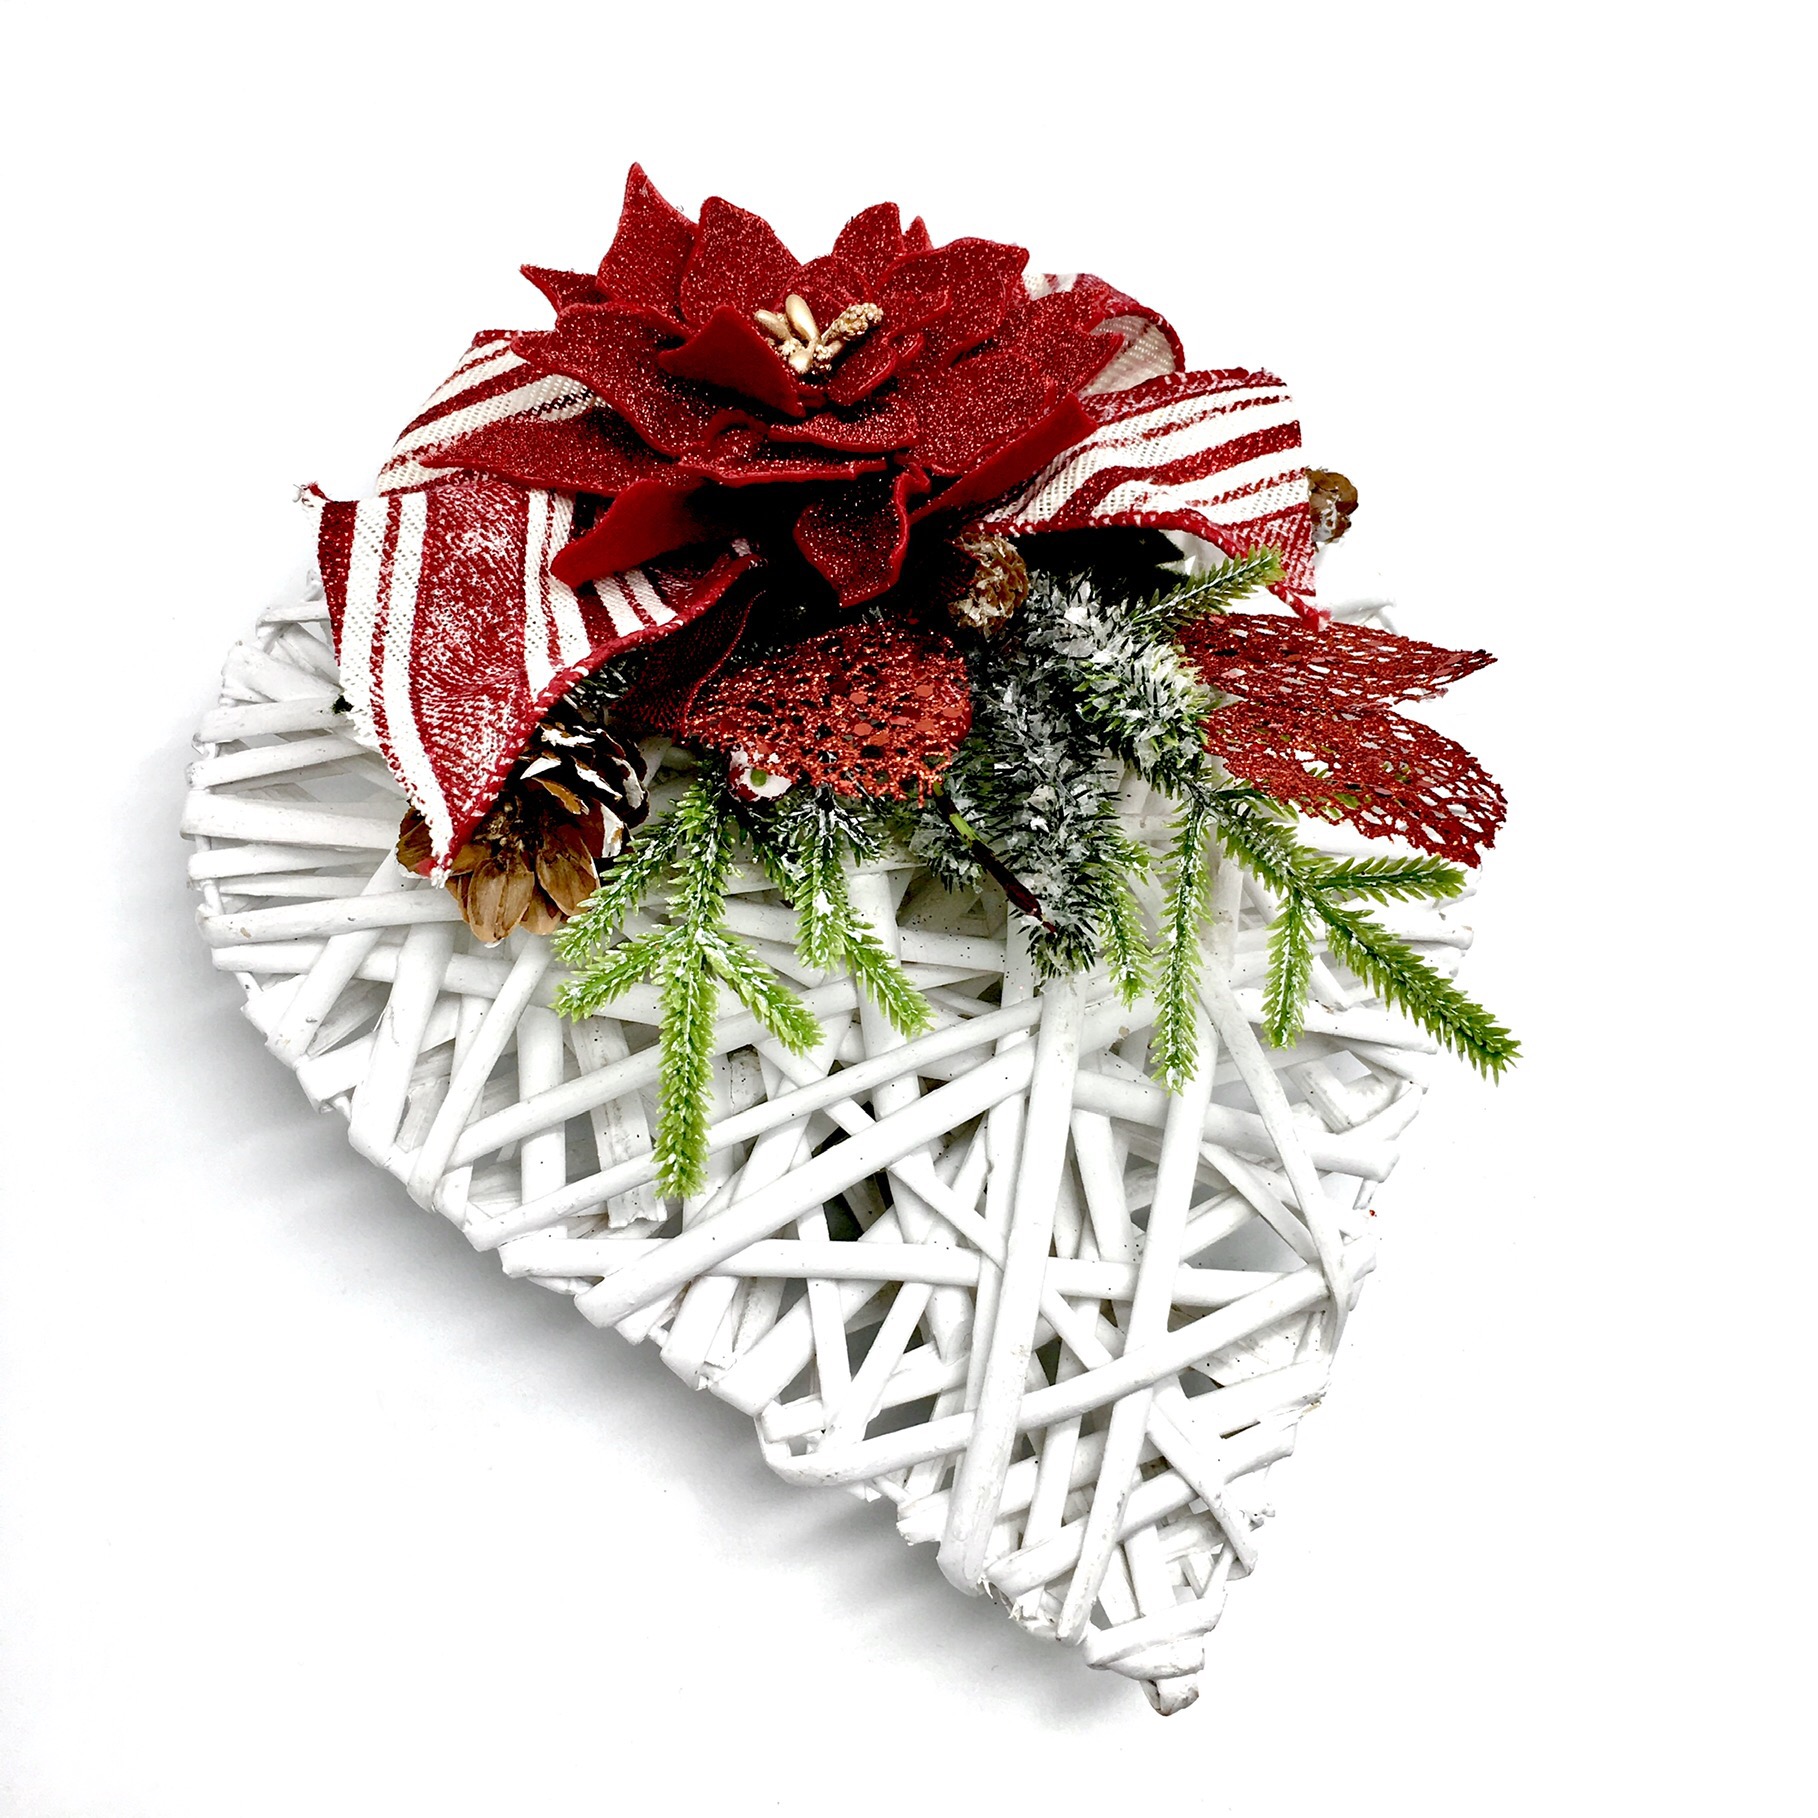 Immagini Natale Jpeg.Cuore Decorato Con Stella Di Natale Linea Merceria Creativa Merceria Vendita Online